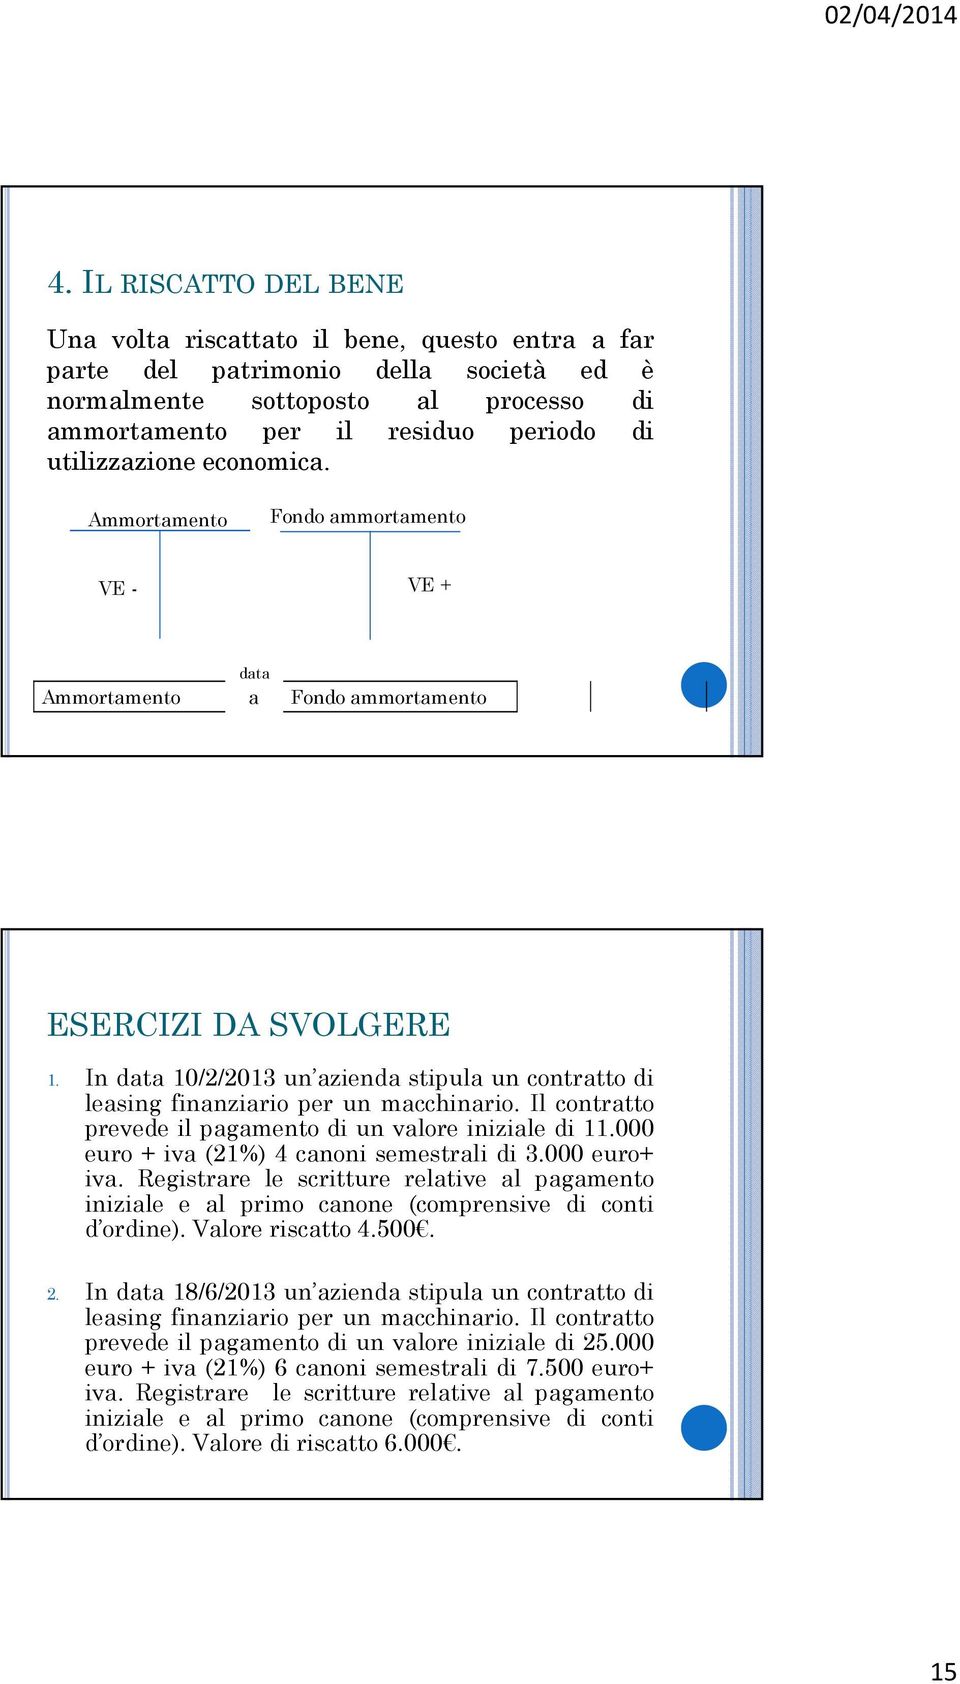 Il contrtto prevede il pgmento di un vlore inizile di 11.000 euro + iv (21%) 4 cnoni semestrli di 3.000 euro+ iv.